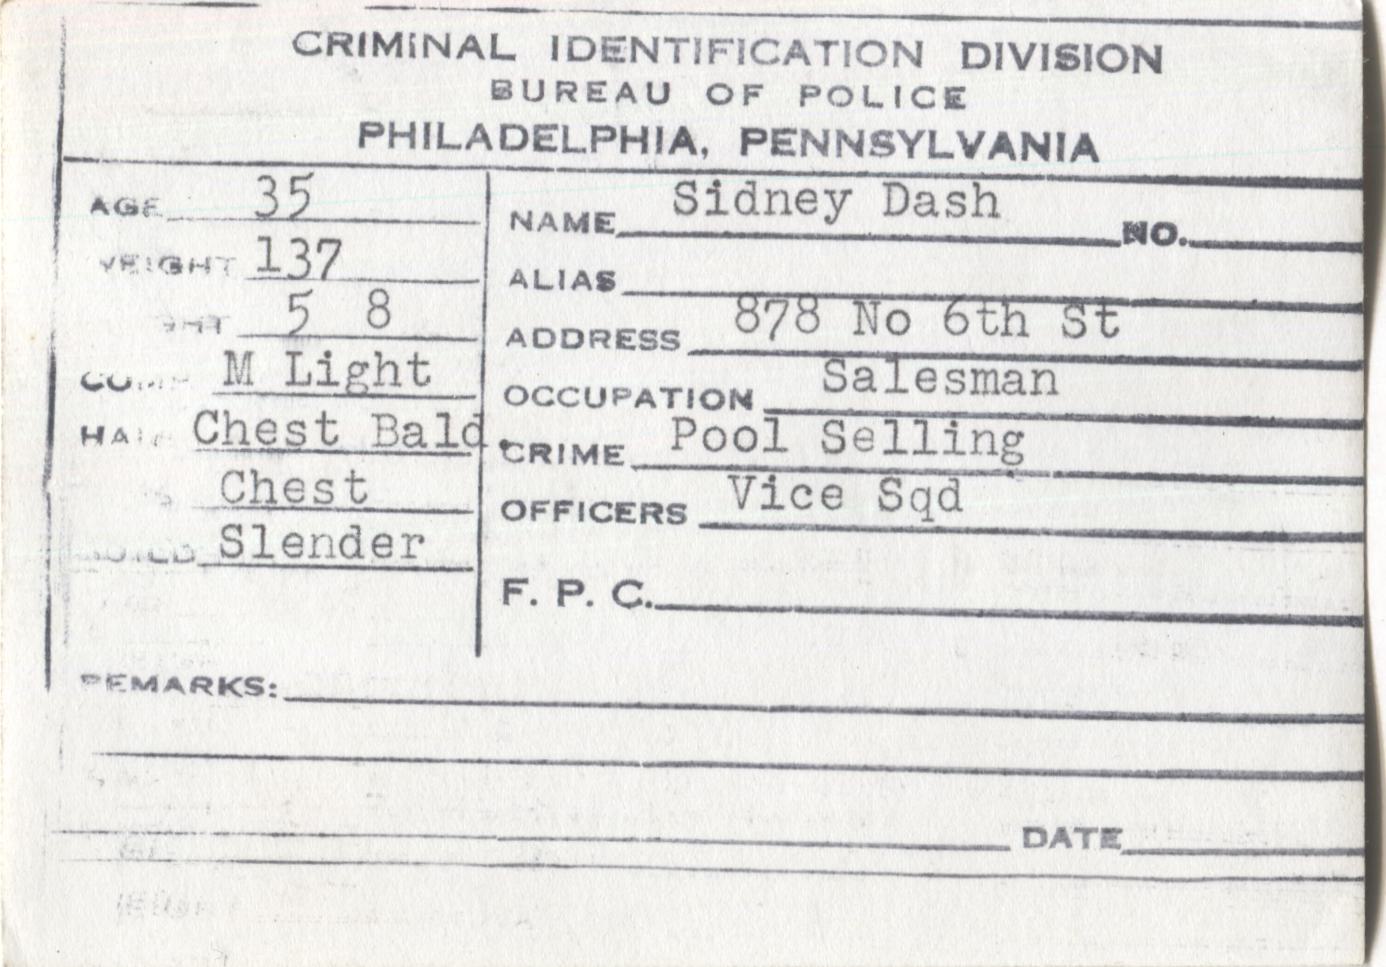 Sidney Dash Mugshot - Arrested on 1/17/1948 for Poolselling